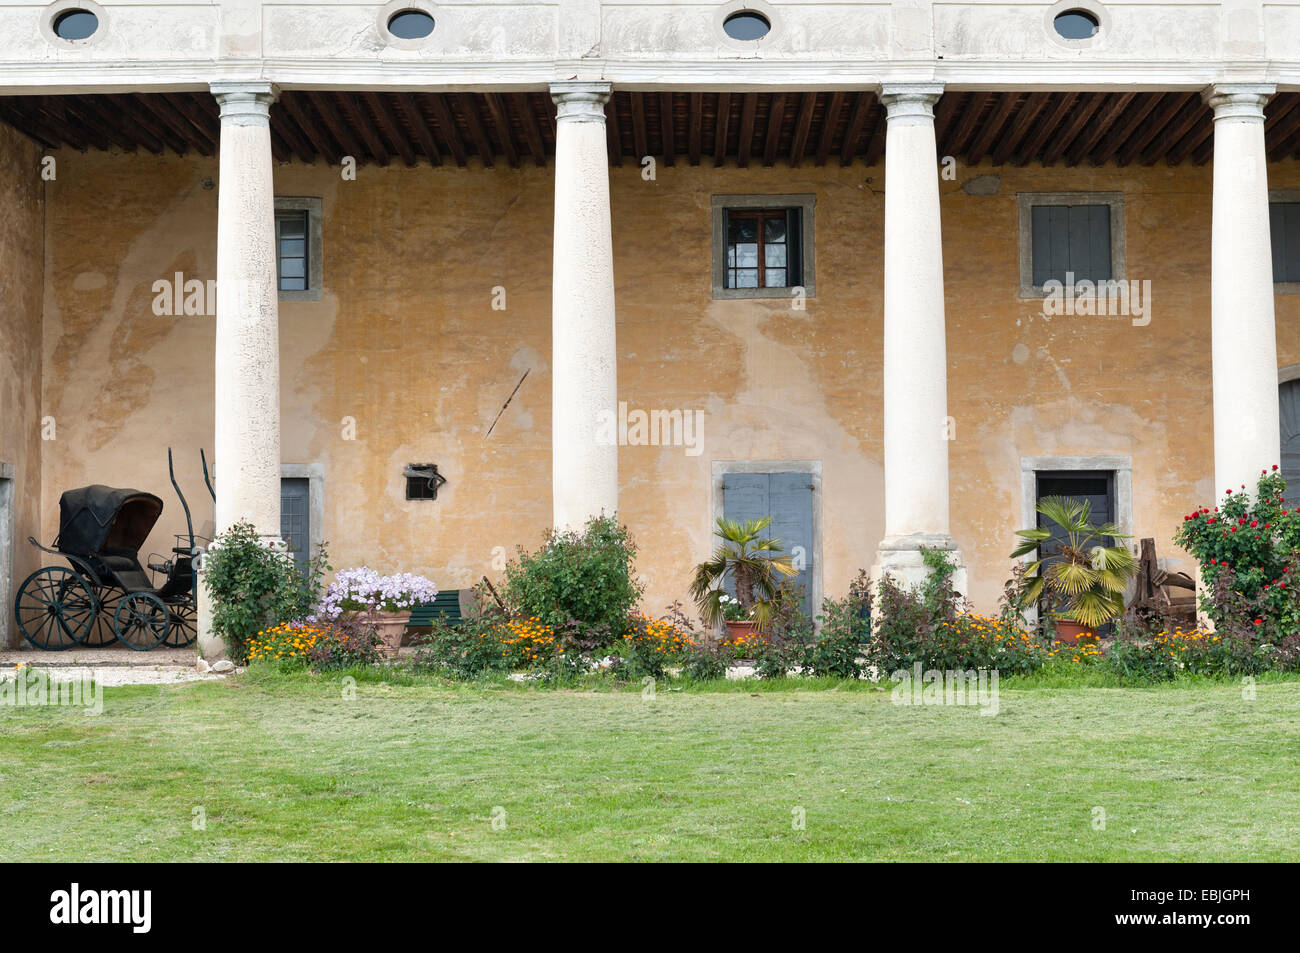 Villa Piovene Porto Godi, près de Vicenza, Italie. Construit vers 1539. Un 'Barchessa' (aile latérale pour chariots de ferme, stockage etc) Banque D'Images